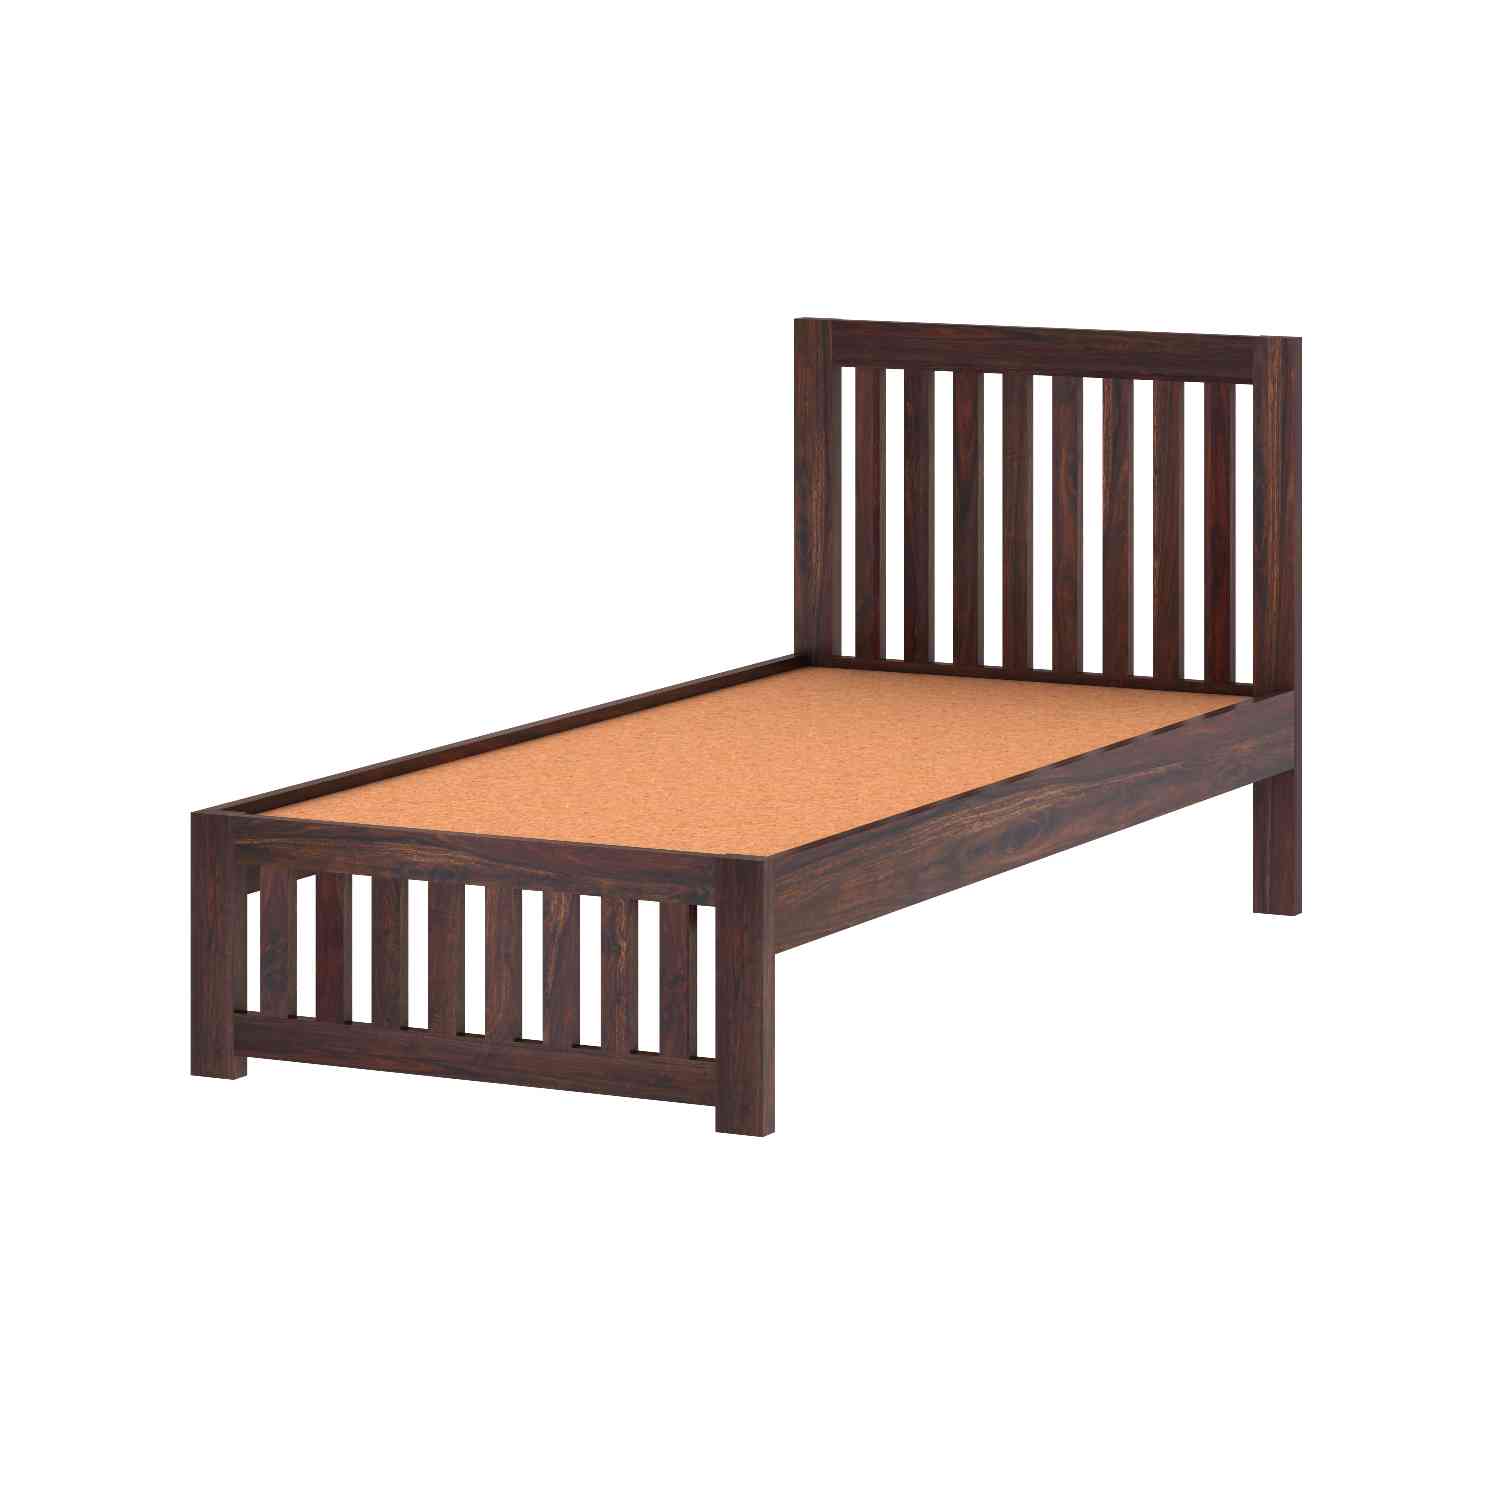 Fusta Solid Sheesham Wood Single Bed Without Storage (Walnut Finish)